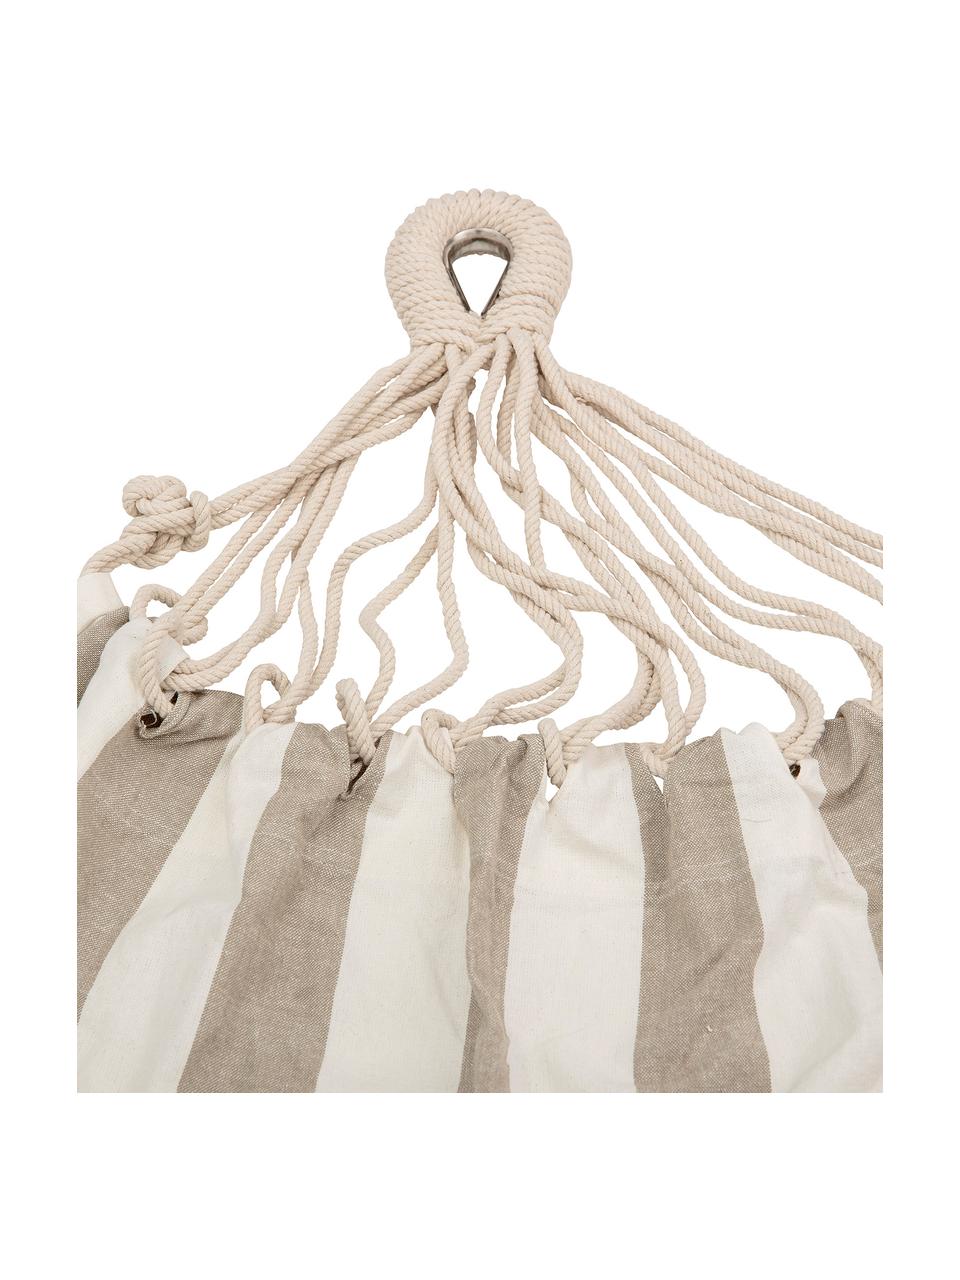 Hängematte Lazy aus Baumwolle mit gestreiftem Muster, Baumwolle, Weiss, Beige, B 100 x L 270 cm